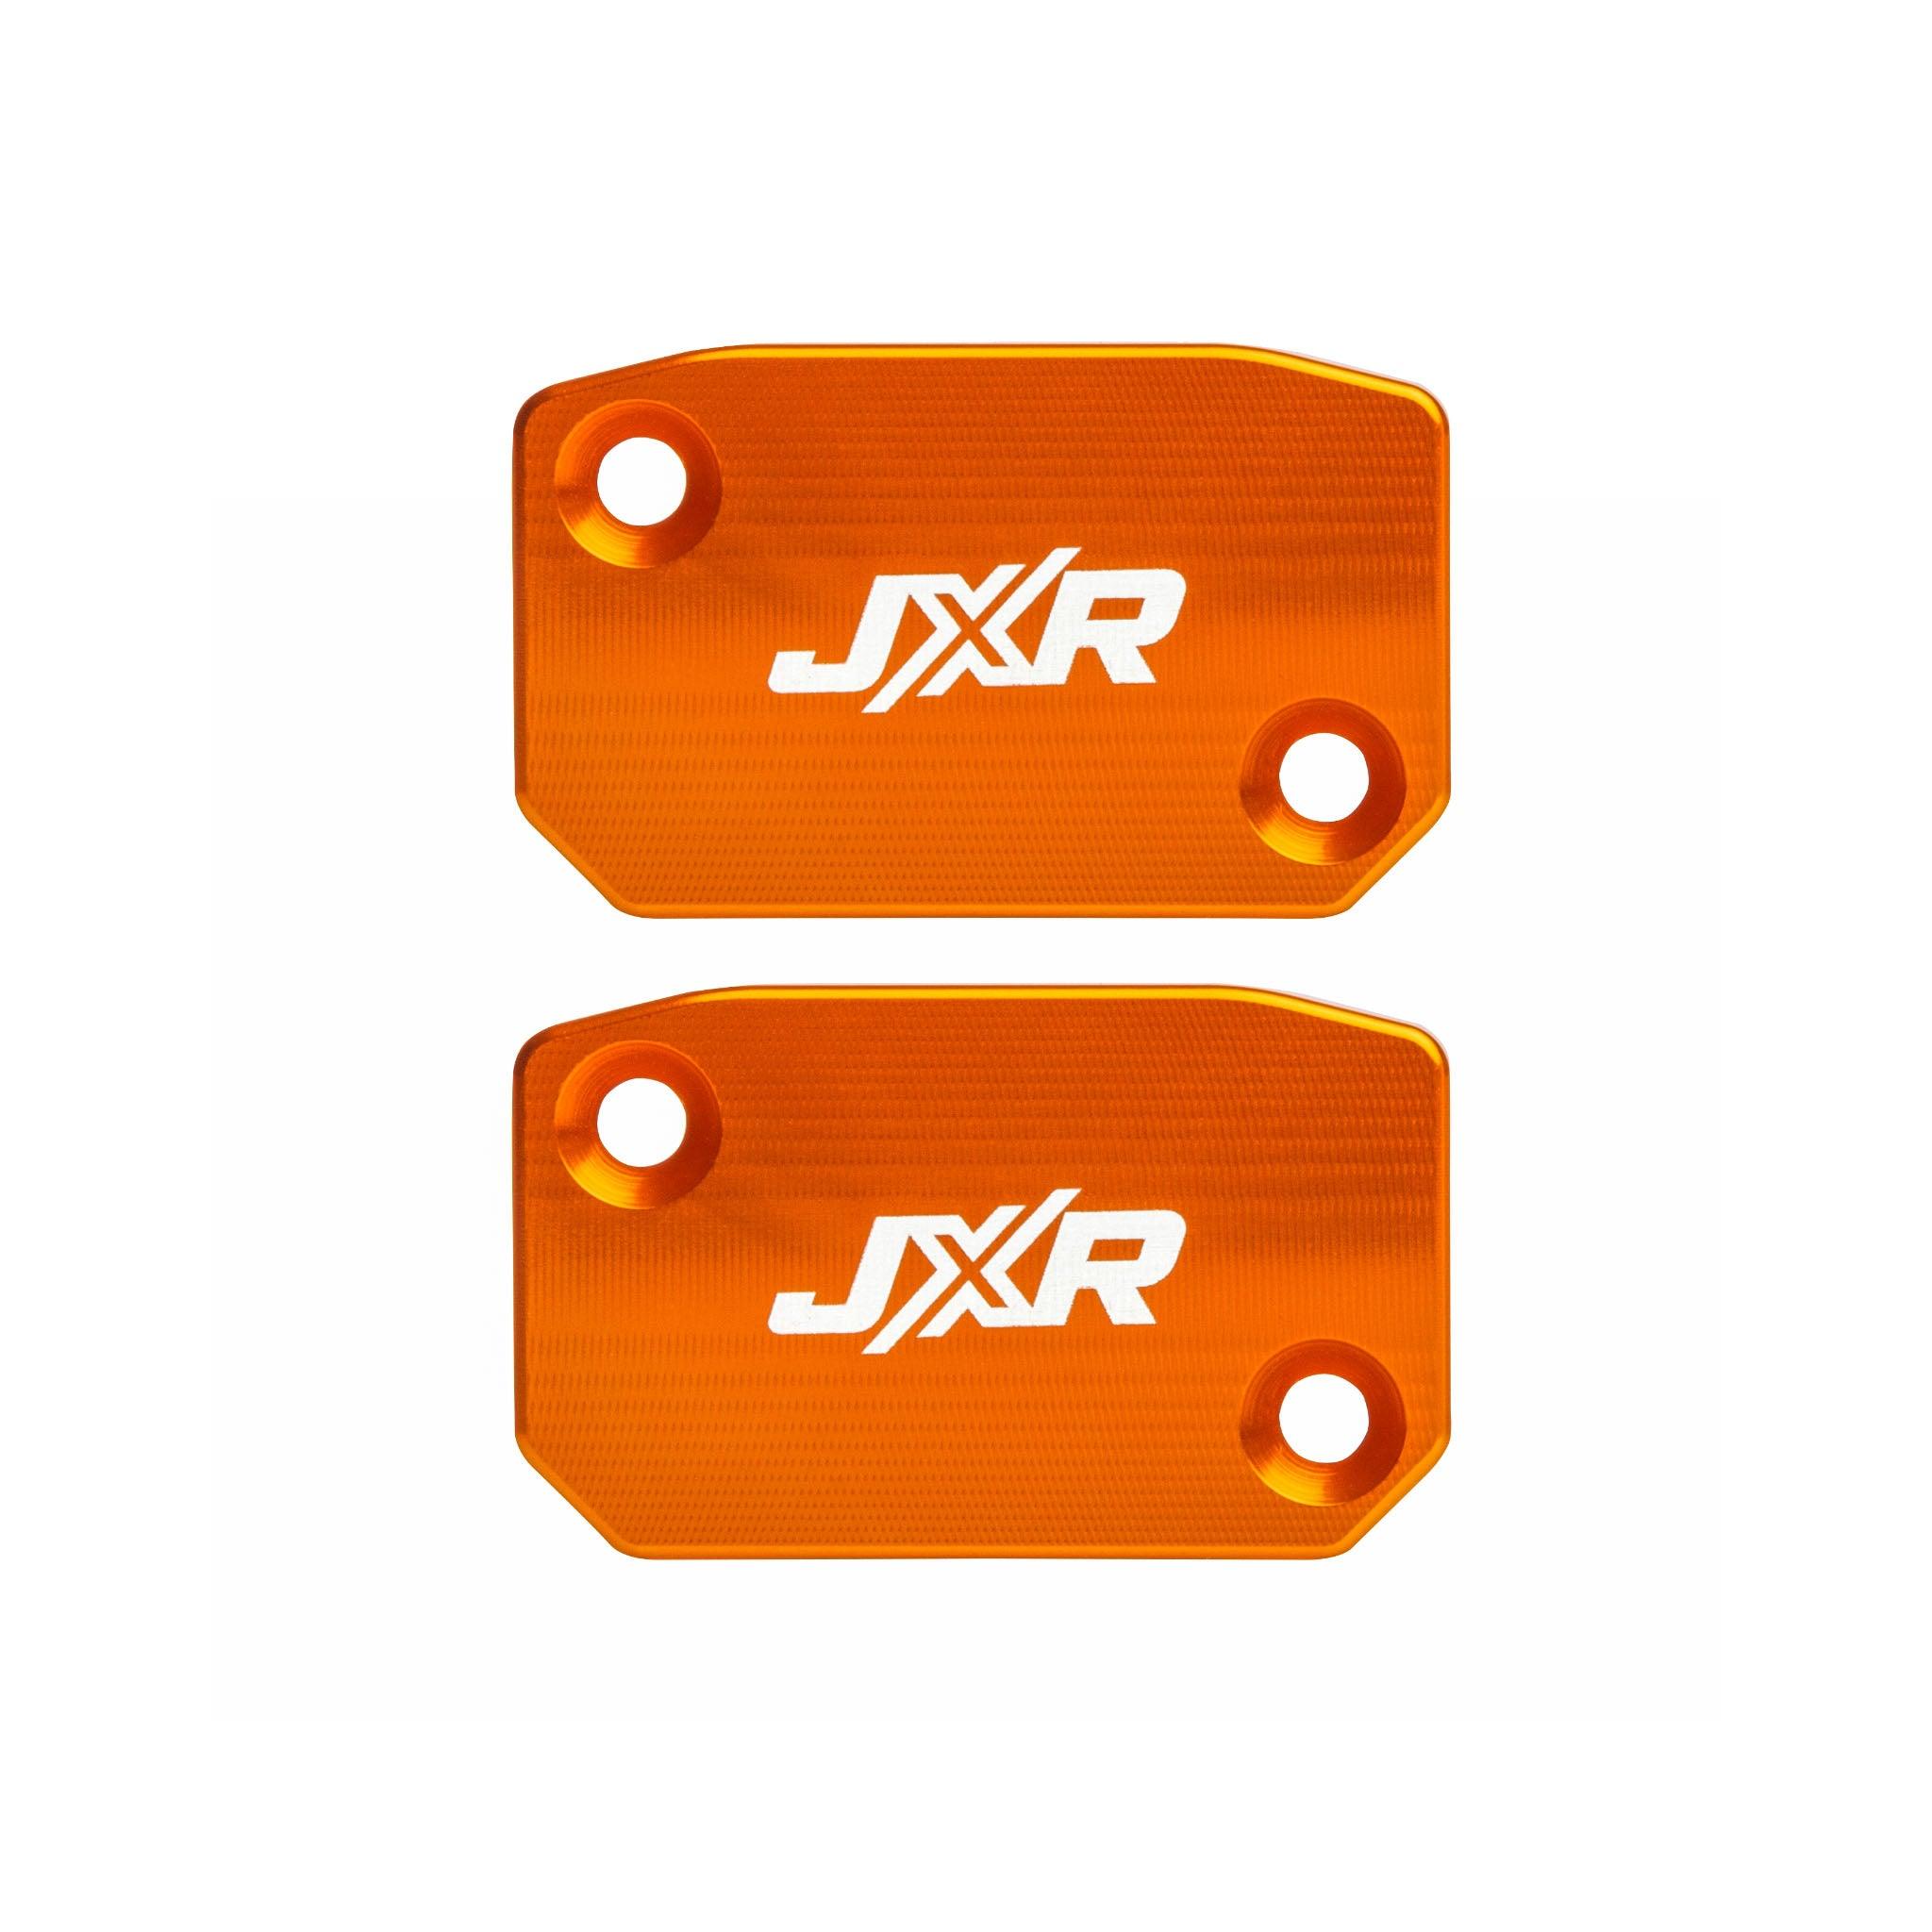 Orange reservoir covers for KTM brembo clutch & brake master cylinders